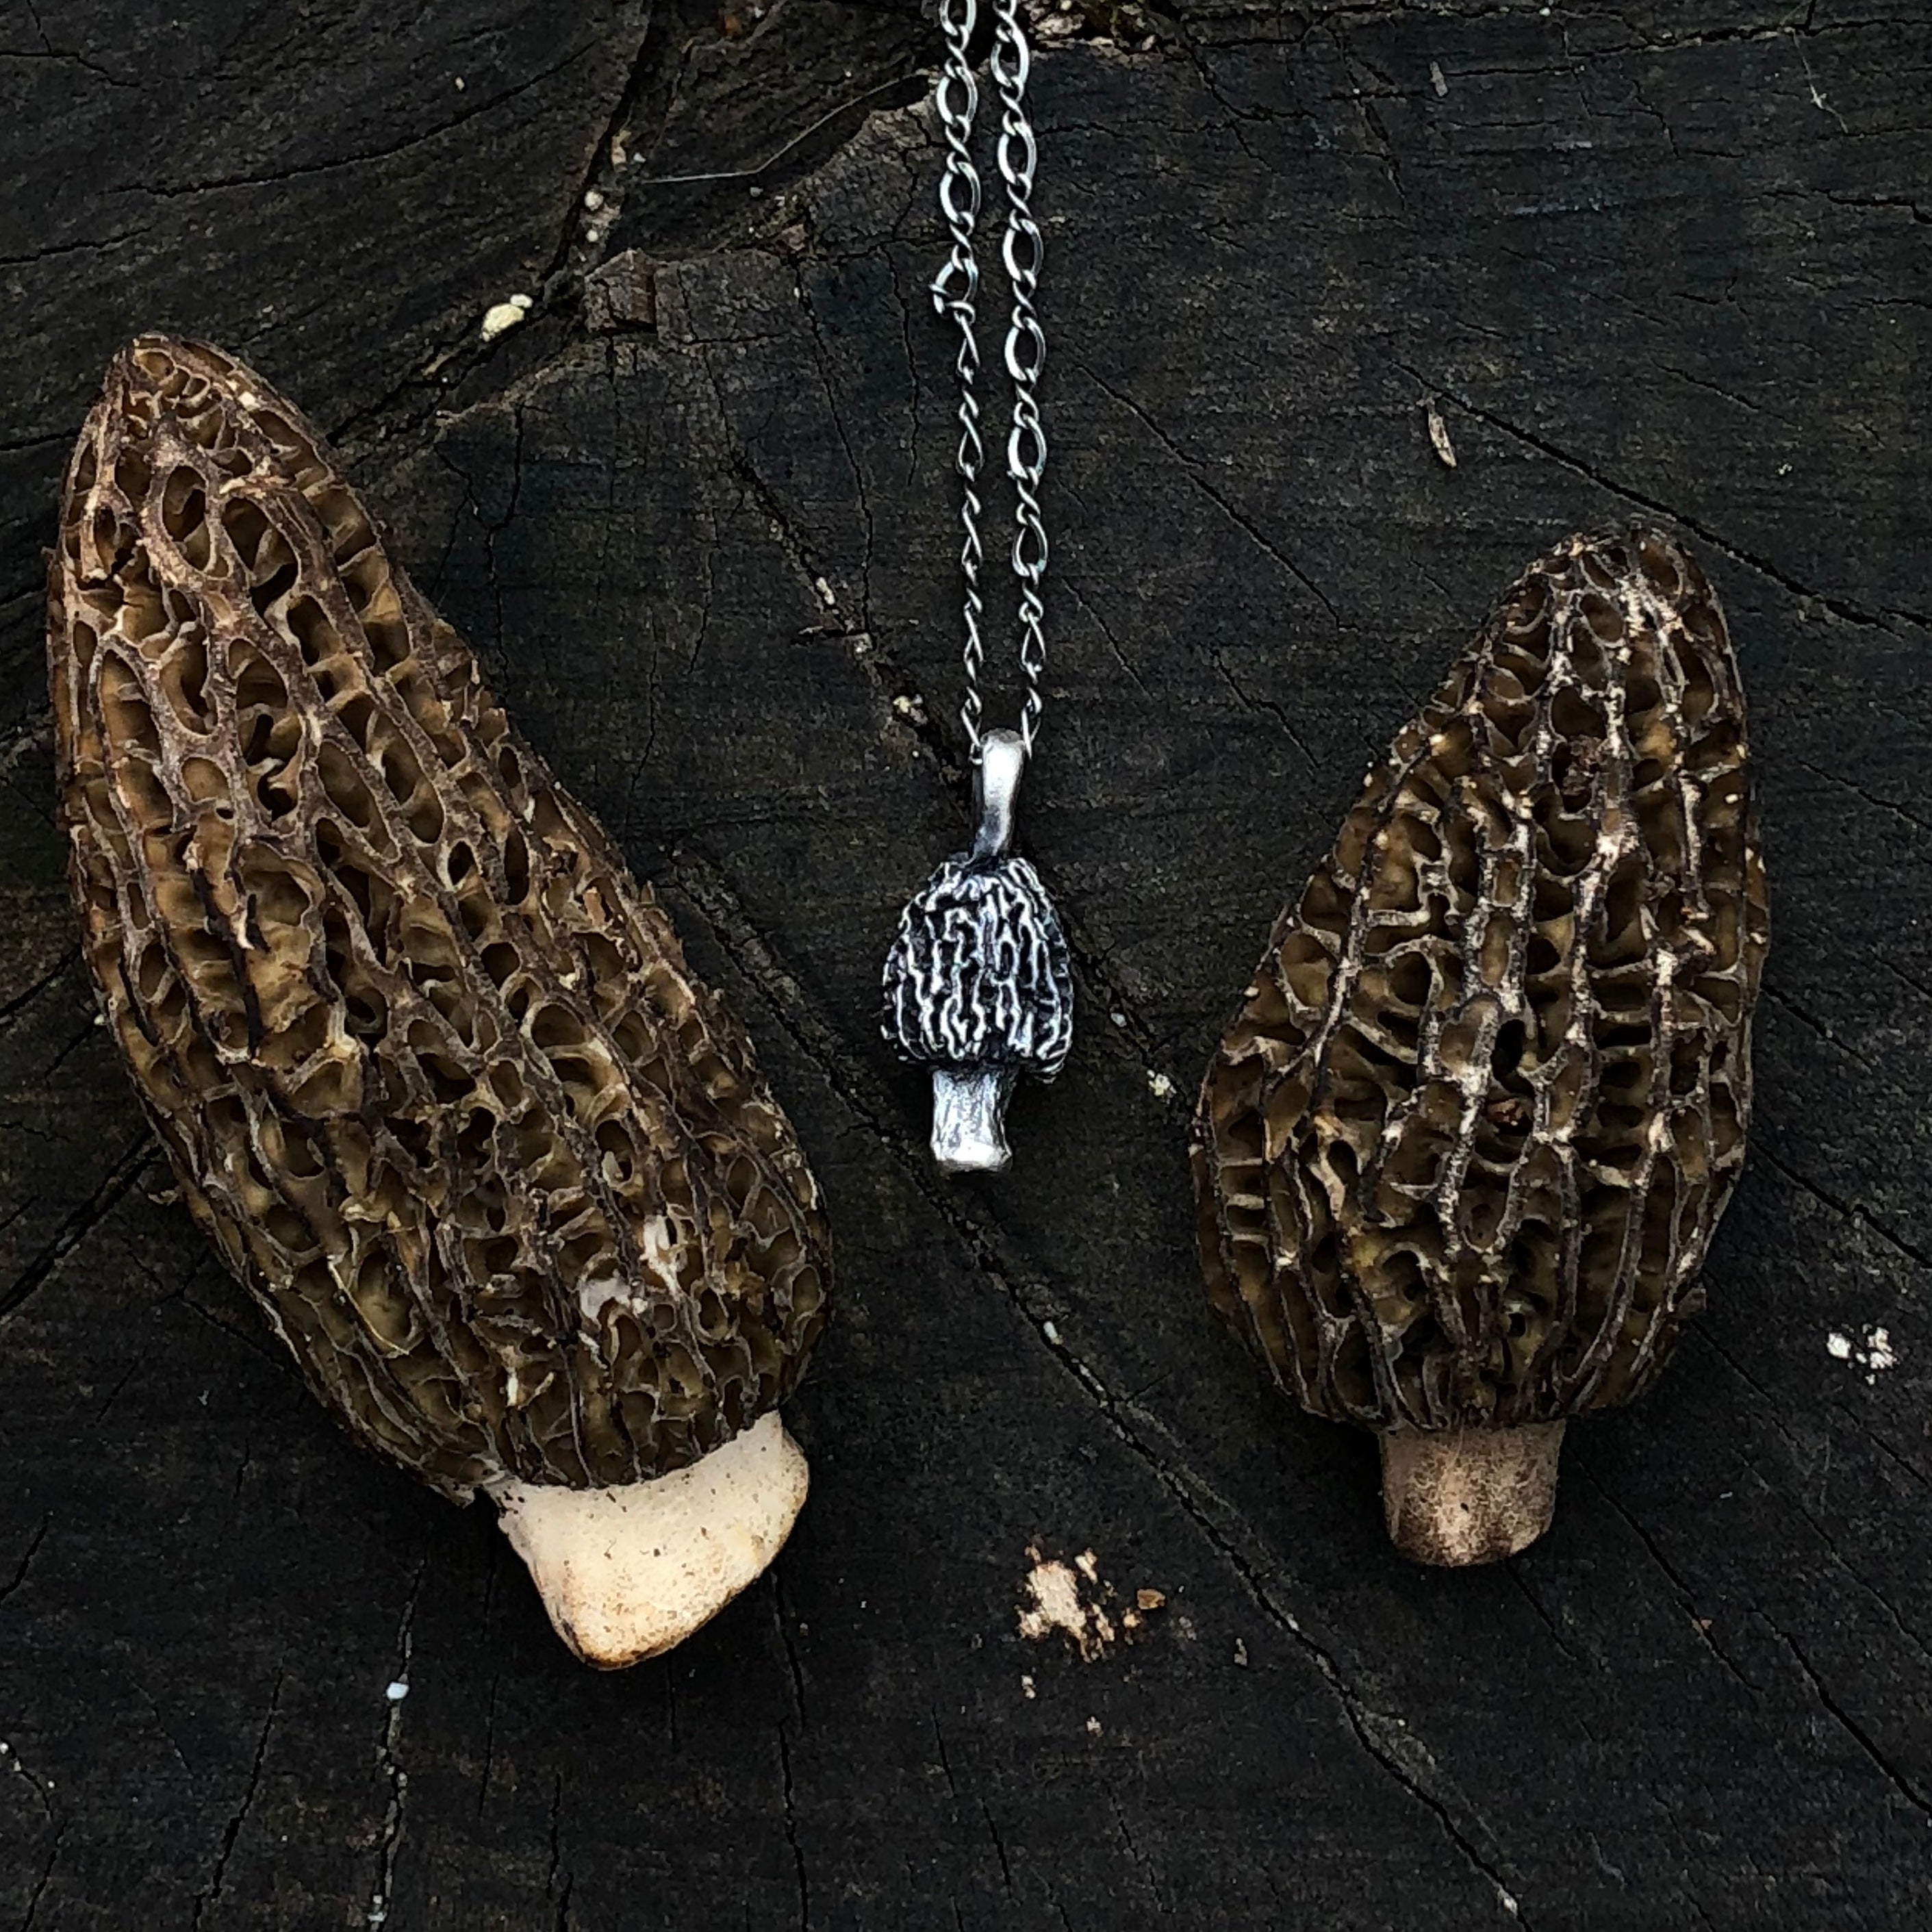 Morel mushroom necklace